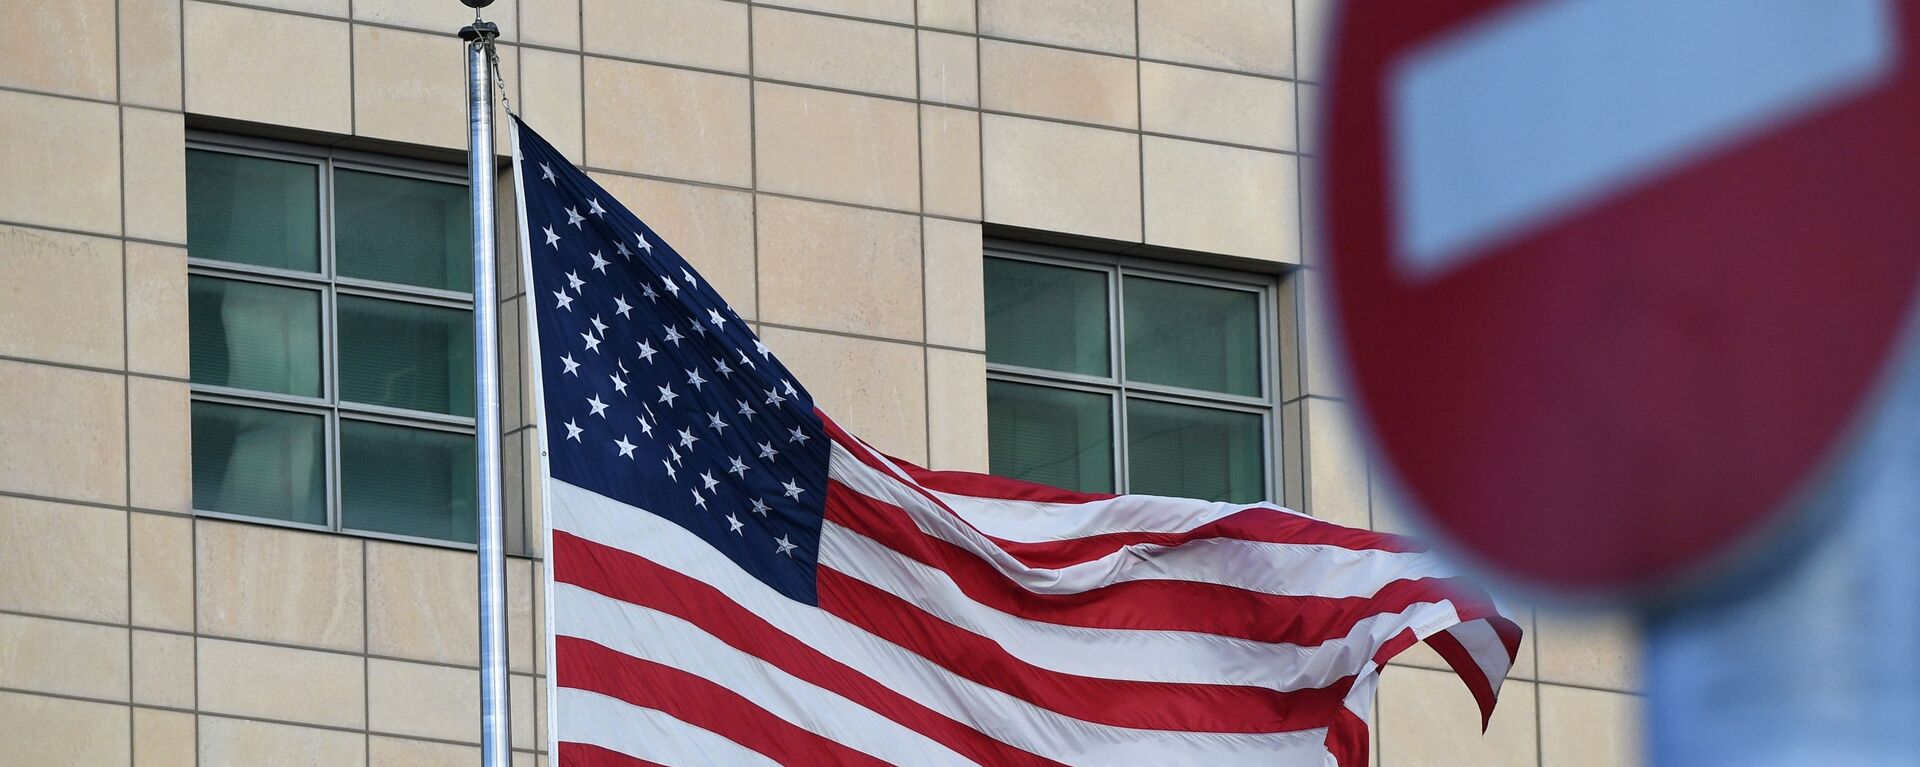 Государственный флаг США у американского посольства в Москве - Sputnik Latvija, 1920, 23.03.2022